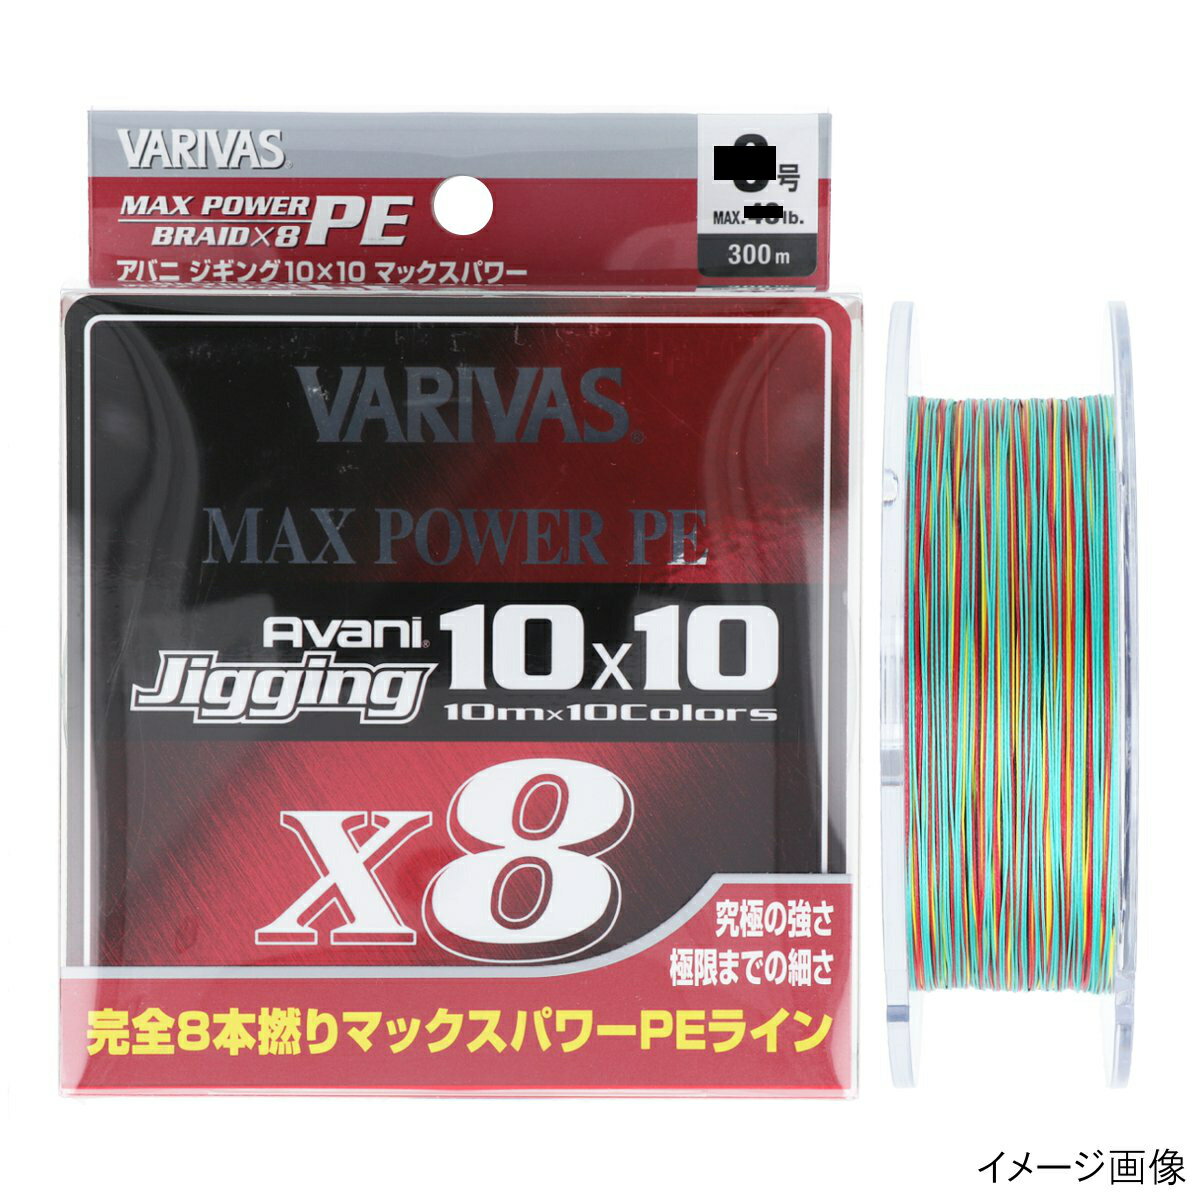  バリバス VARIVAS アバニ ジギング10×10 マックスパワーPE X8 300m 0.8号